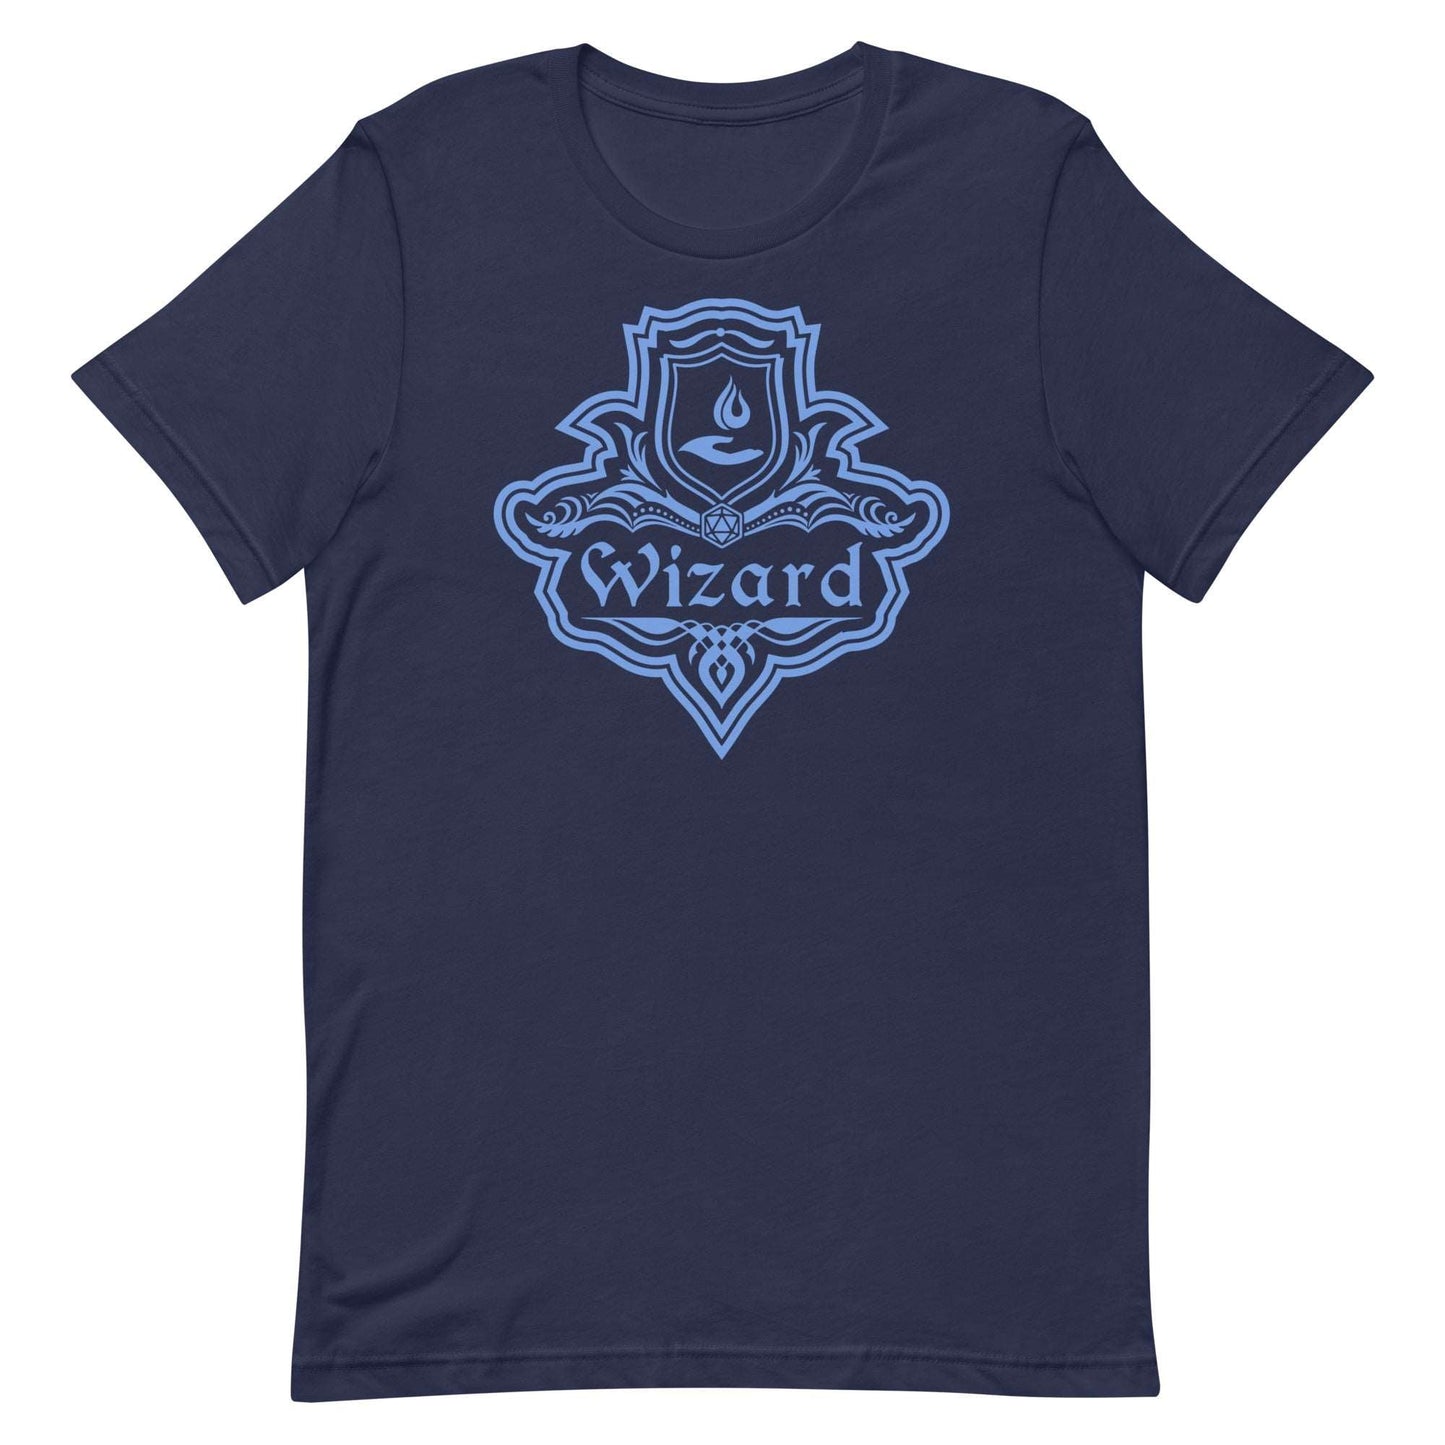 DnD Wizard Class Emblem T-Shirt - Dungeons & Dragons Wizard Tee T-Shirt Navy / S